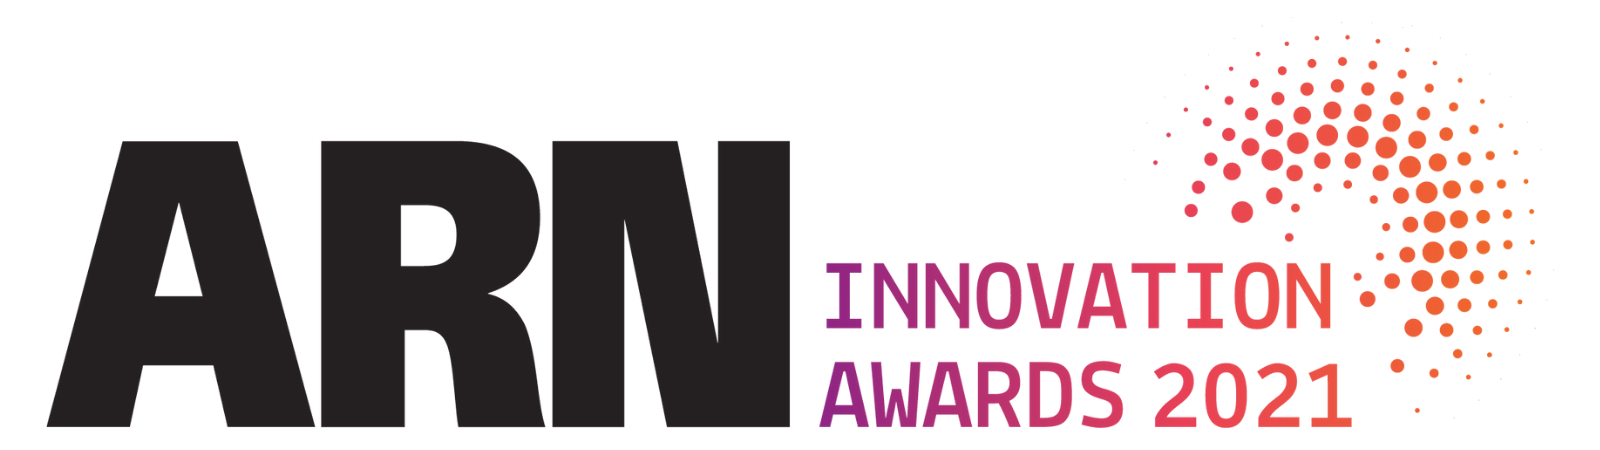 ARN Innovation Awards